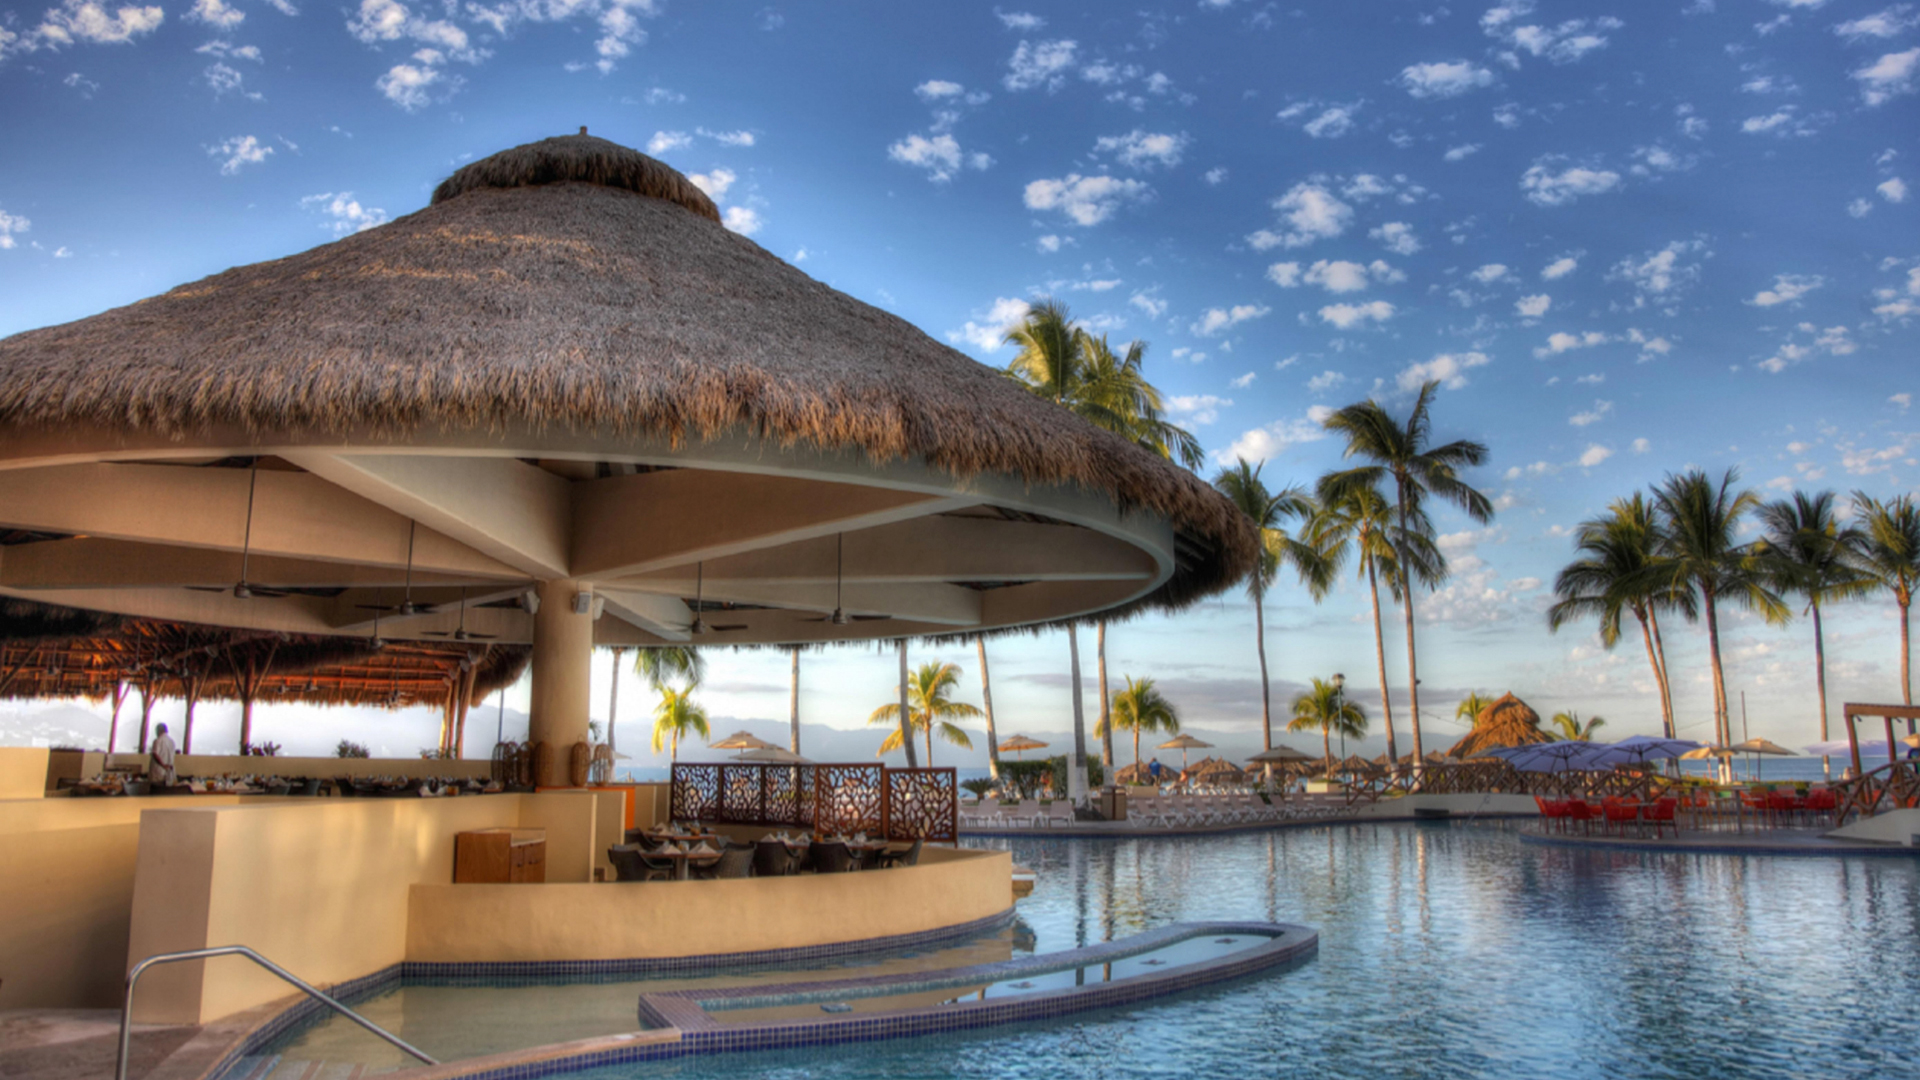 royal-holiday-hotel-resort-vista-restaurant-torre-condomar-sunscape-pvrs-mexico-jalisco-puerto-vallarta